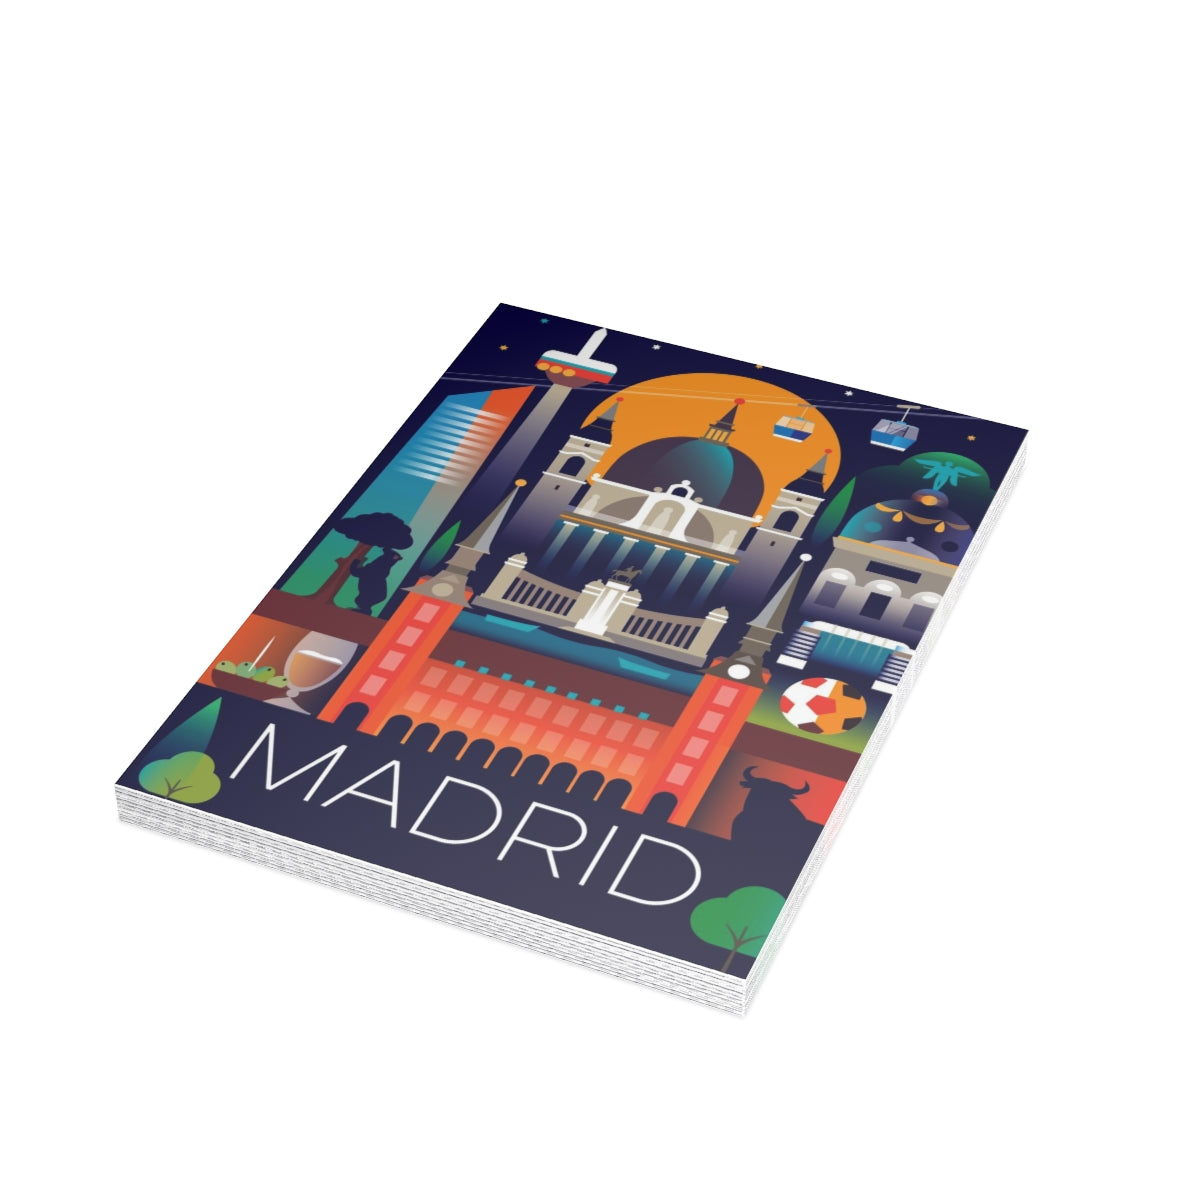 Cartes de notes mates pliées Madrid + enveloppes (10 pièces)